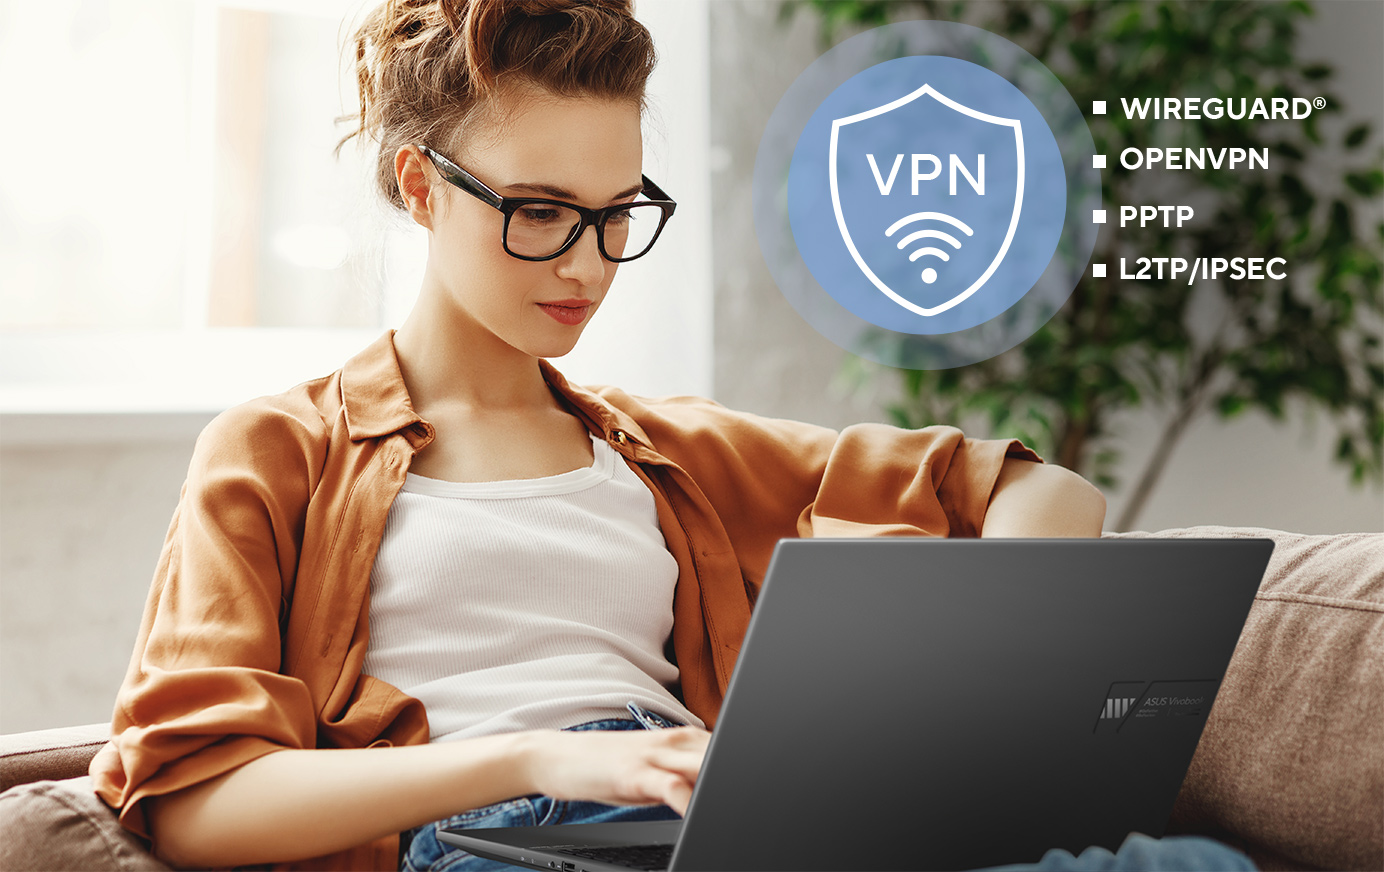 Routery ASUS obsługują szereg protokołów bezpieczeństwa VPN, w tym WireGuard®, OpenVPN, PPTP i L2TP/IPSec.